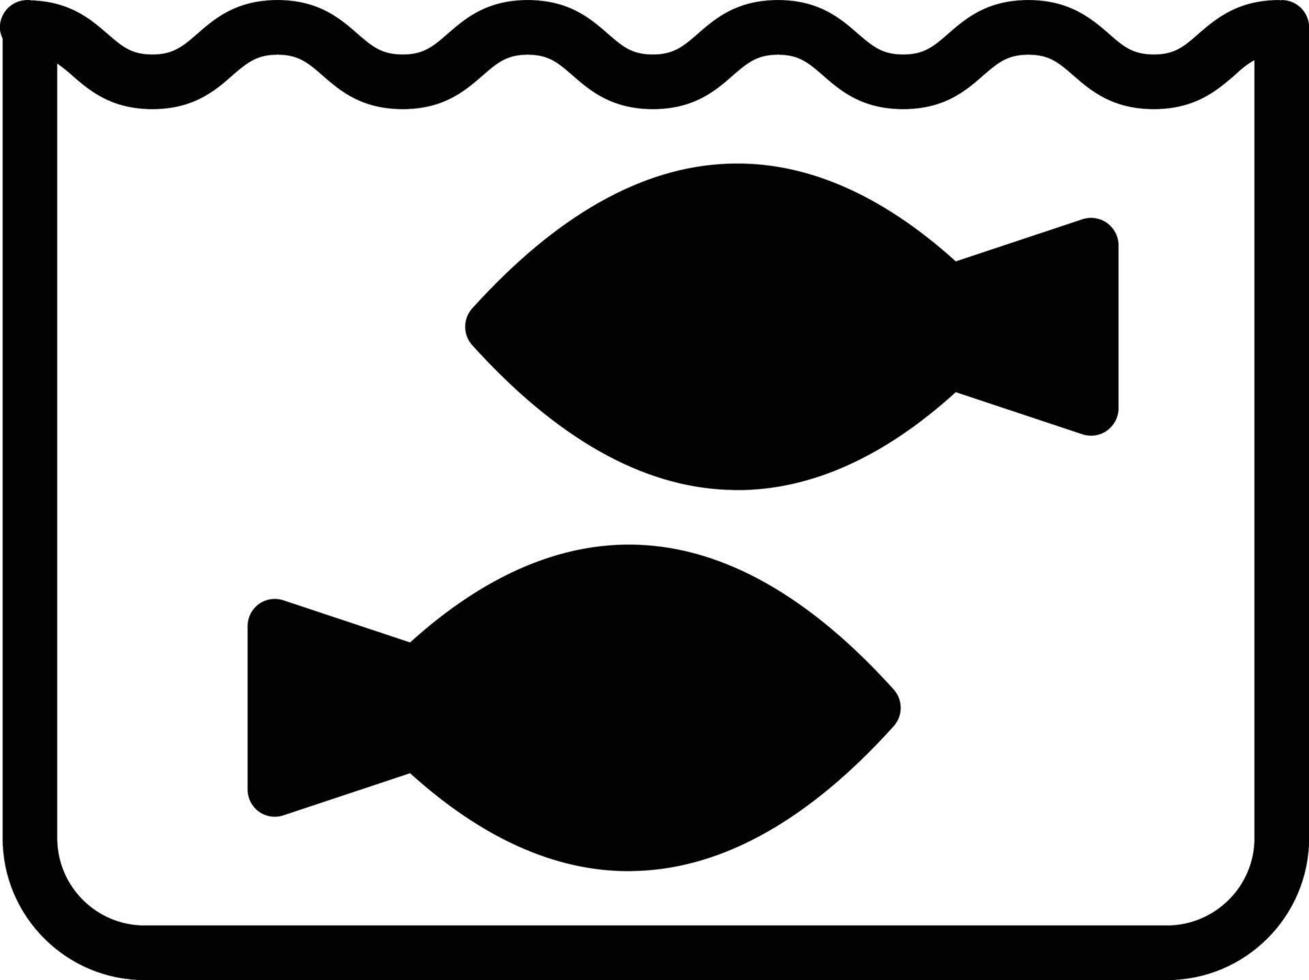 poisson étang vecteur illustration sur une background.premium qualité symboles.vecteur Icônes pour concept et graphique conception.